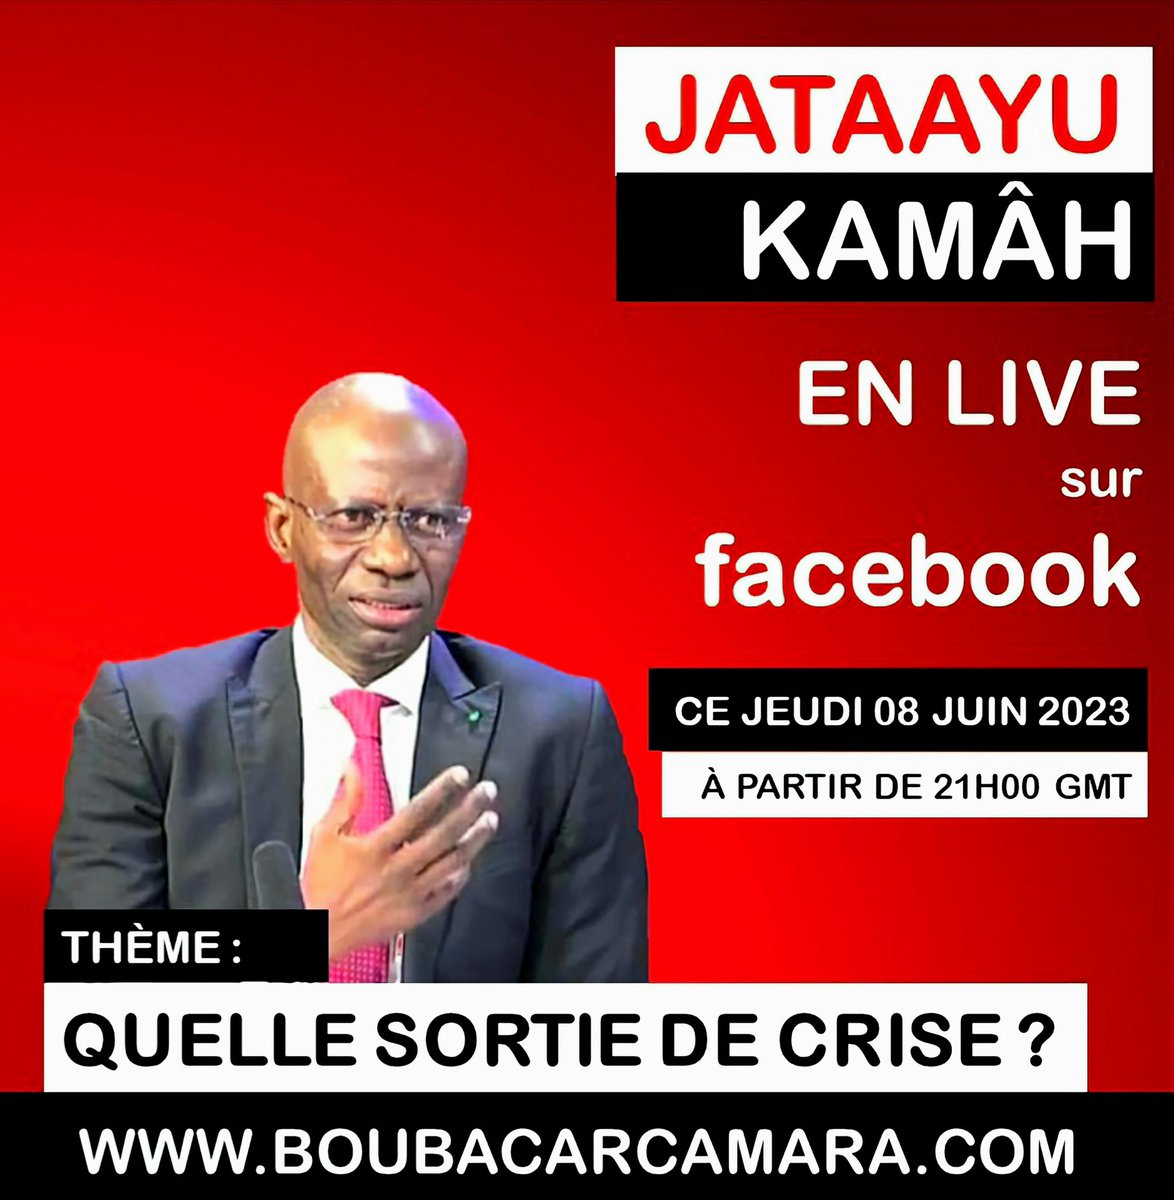 Cher réseau, 
heureux de vous retrouver en LIVE FACEBOOK (JATAAYU KAMÂH) ce jeudi 08 juin 2023 à 21H00 GMT pour : Quelle sortie de crise? 
#Jengu #Tabax #Sénégal #kebetu #sénégalais #senegalaise #livefacebook #Actualité #crise #solution #sortie #JATAAYU #Kamâh